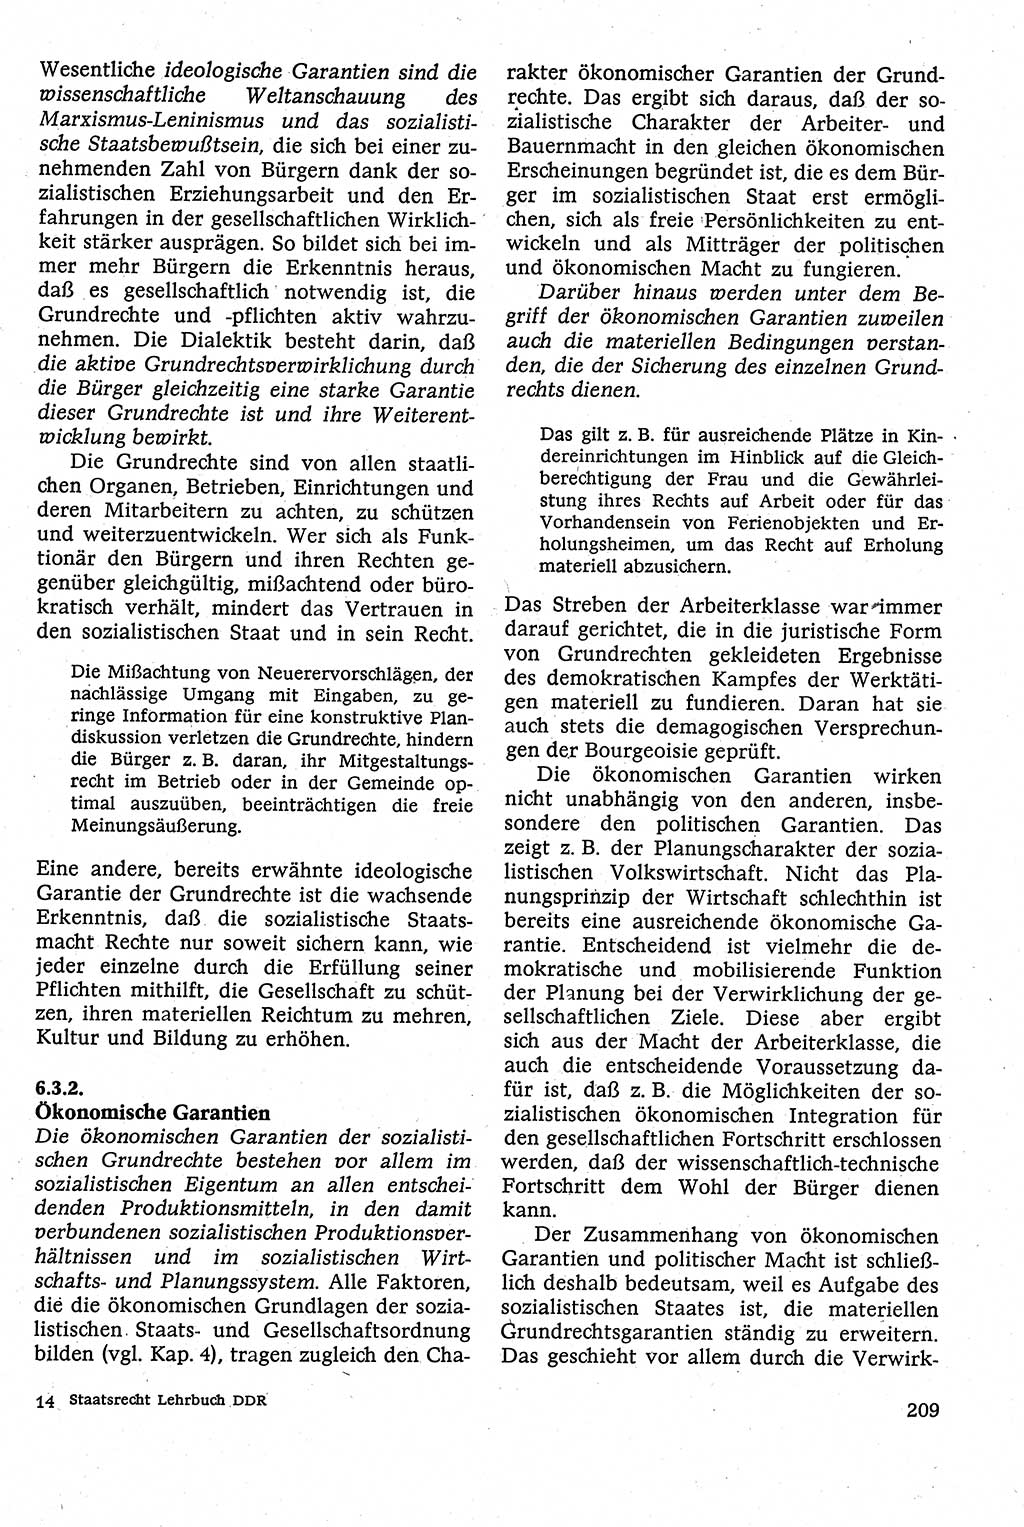 Staatsrecht der DDR [Deutsche Demokratische Republik (DDR)], Lehrbuch 1984, Seite 209 (St.-R. DDR Lb. 1984, S. 209)